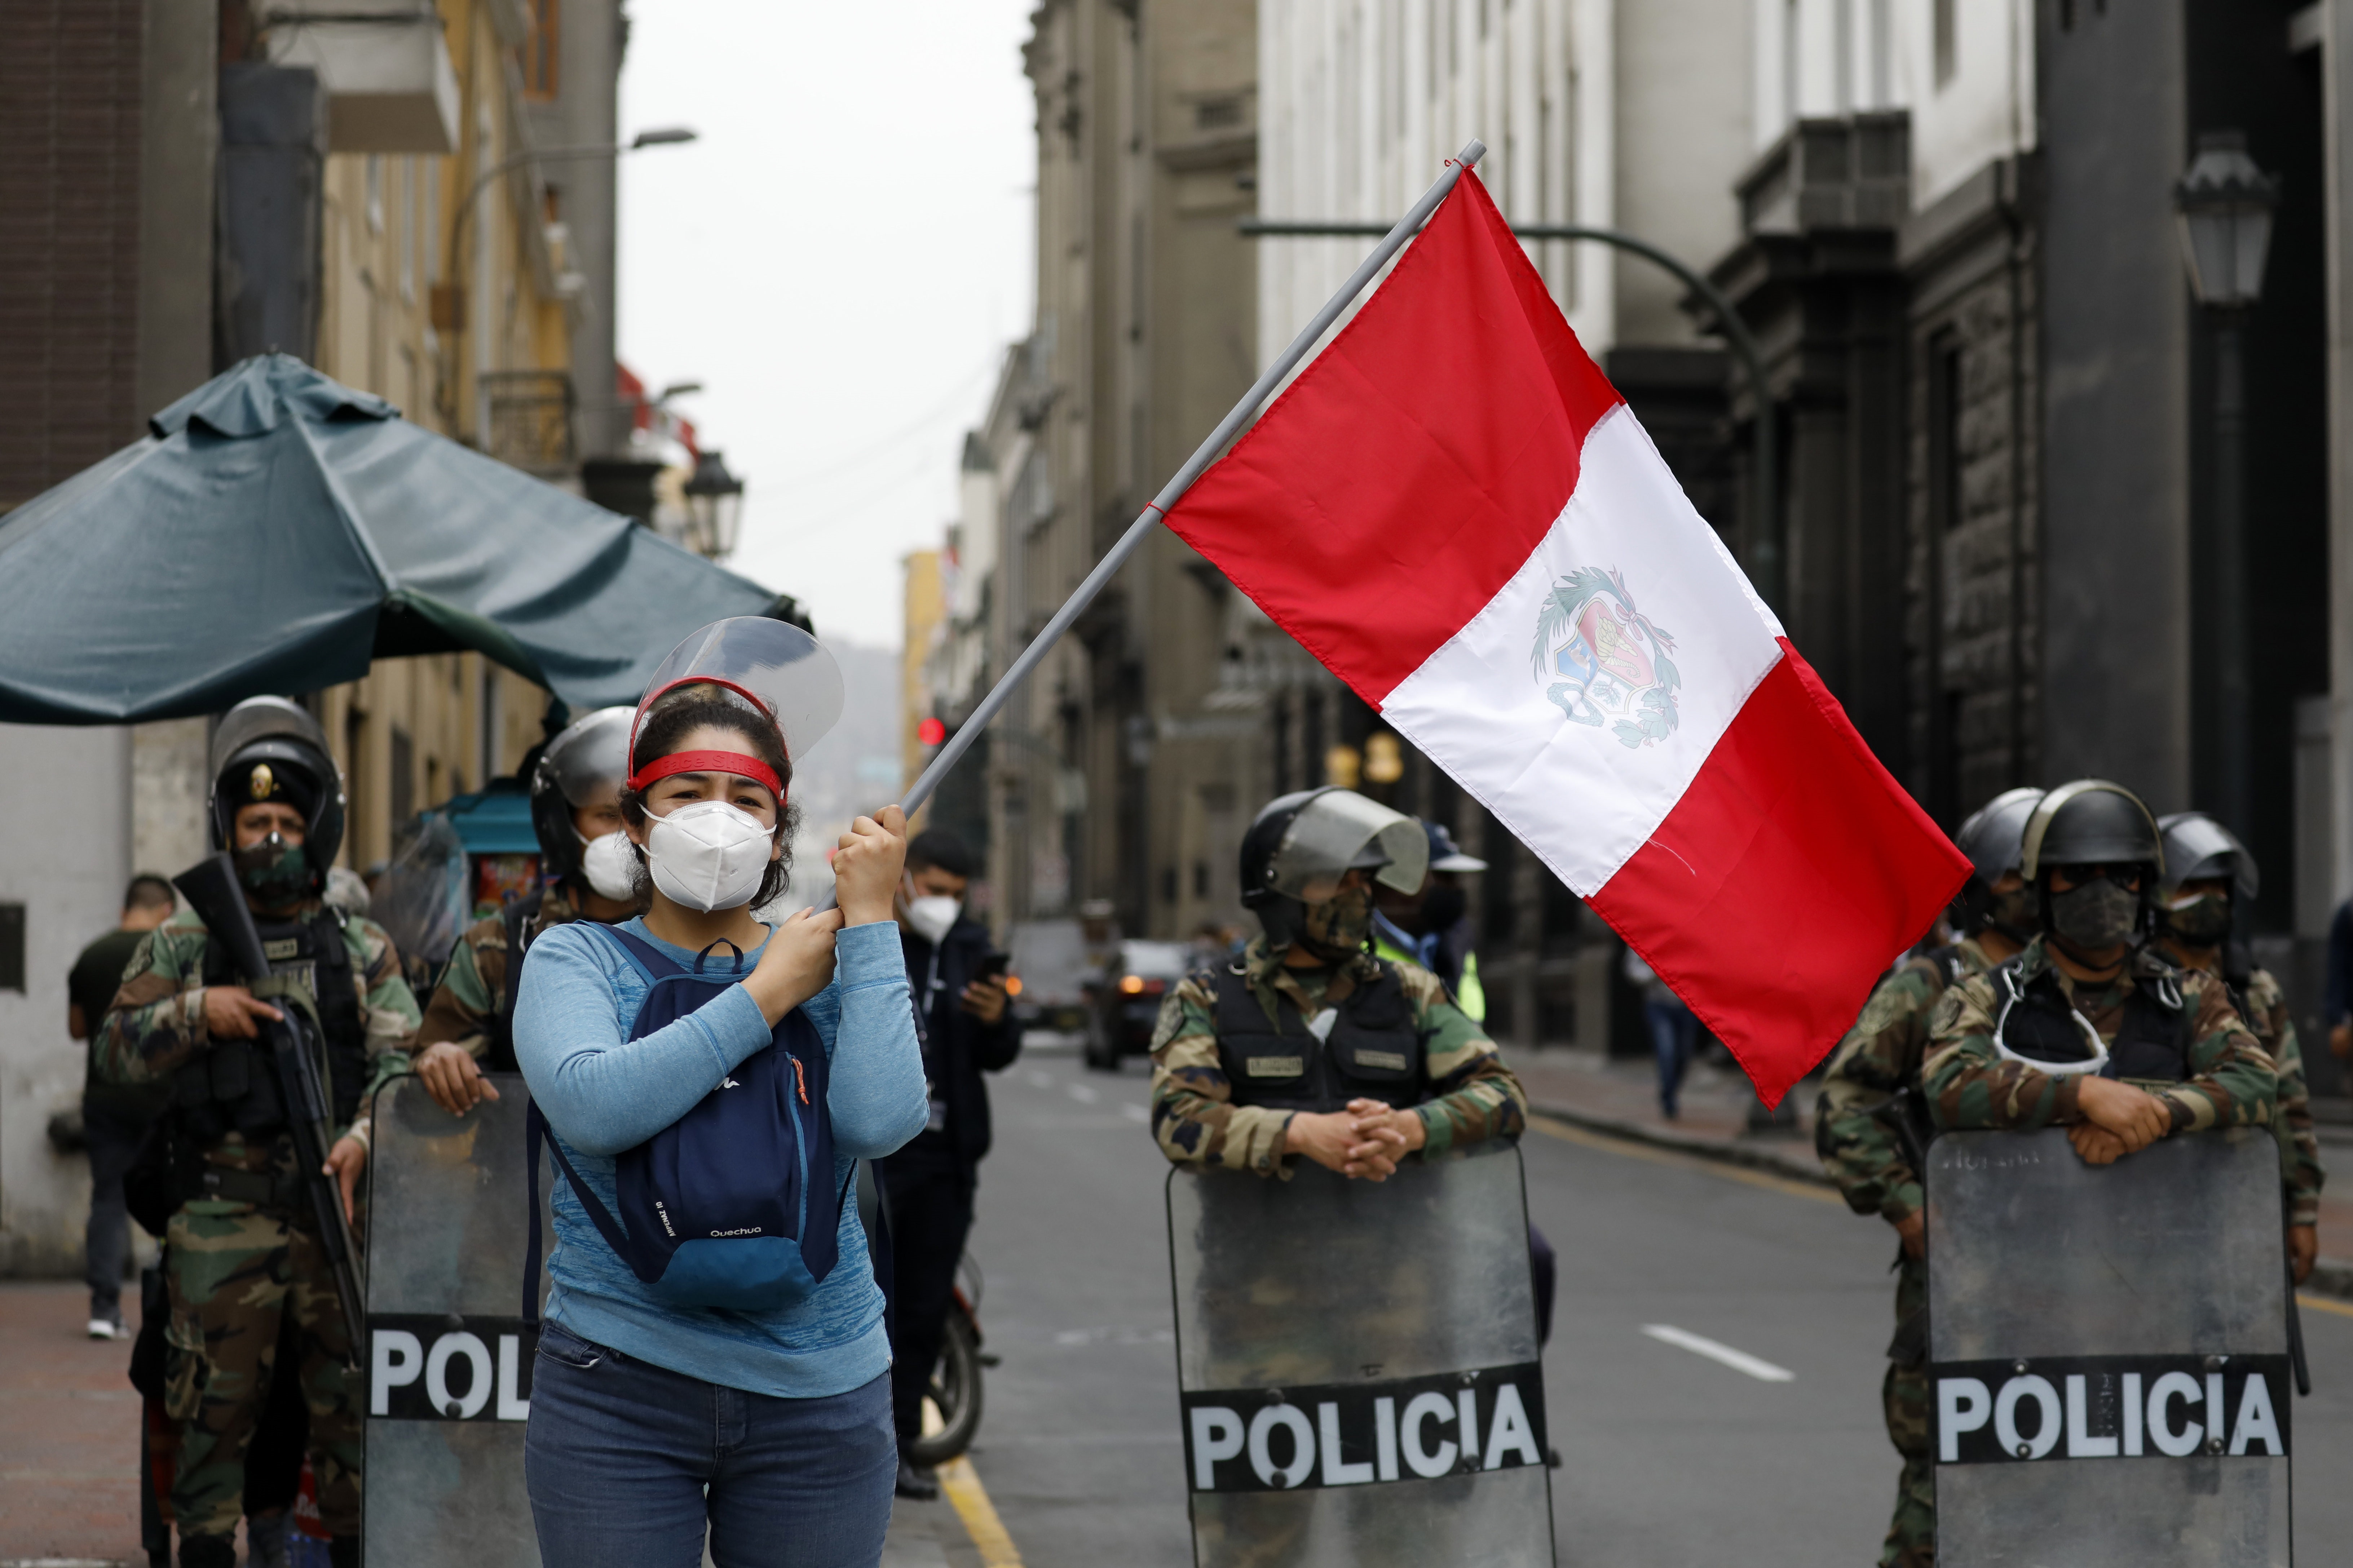 10/11/2020 Protestas contra la vacancia del expresidente de Perú Martín Vizcarra.
POLITICA 
MARIANA BAZO / ZUMA PRESS / CONTACTOPHOTO
